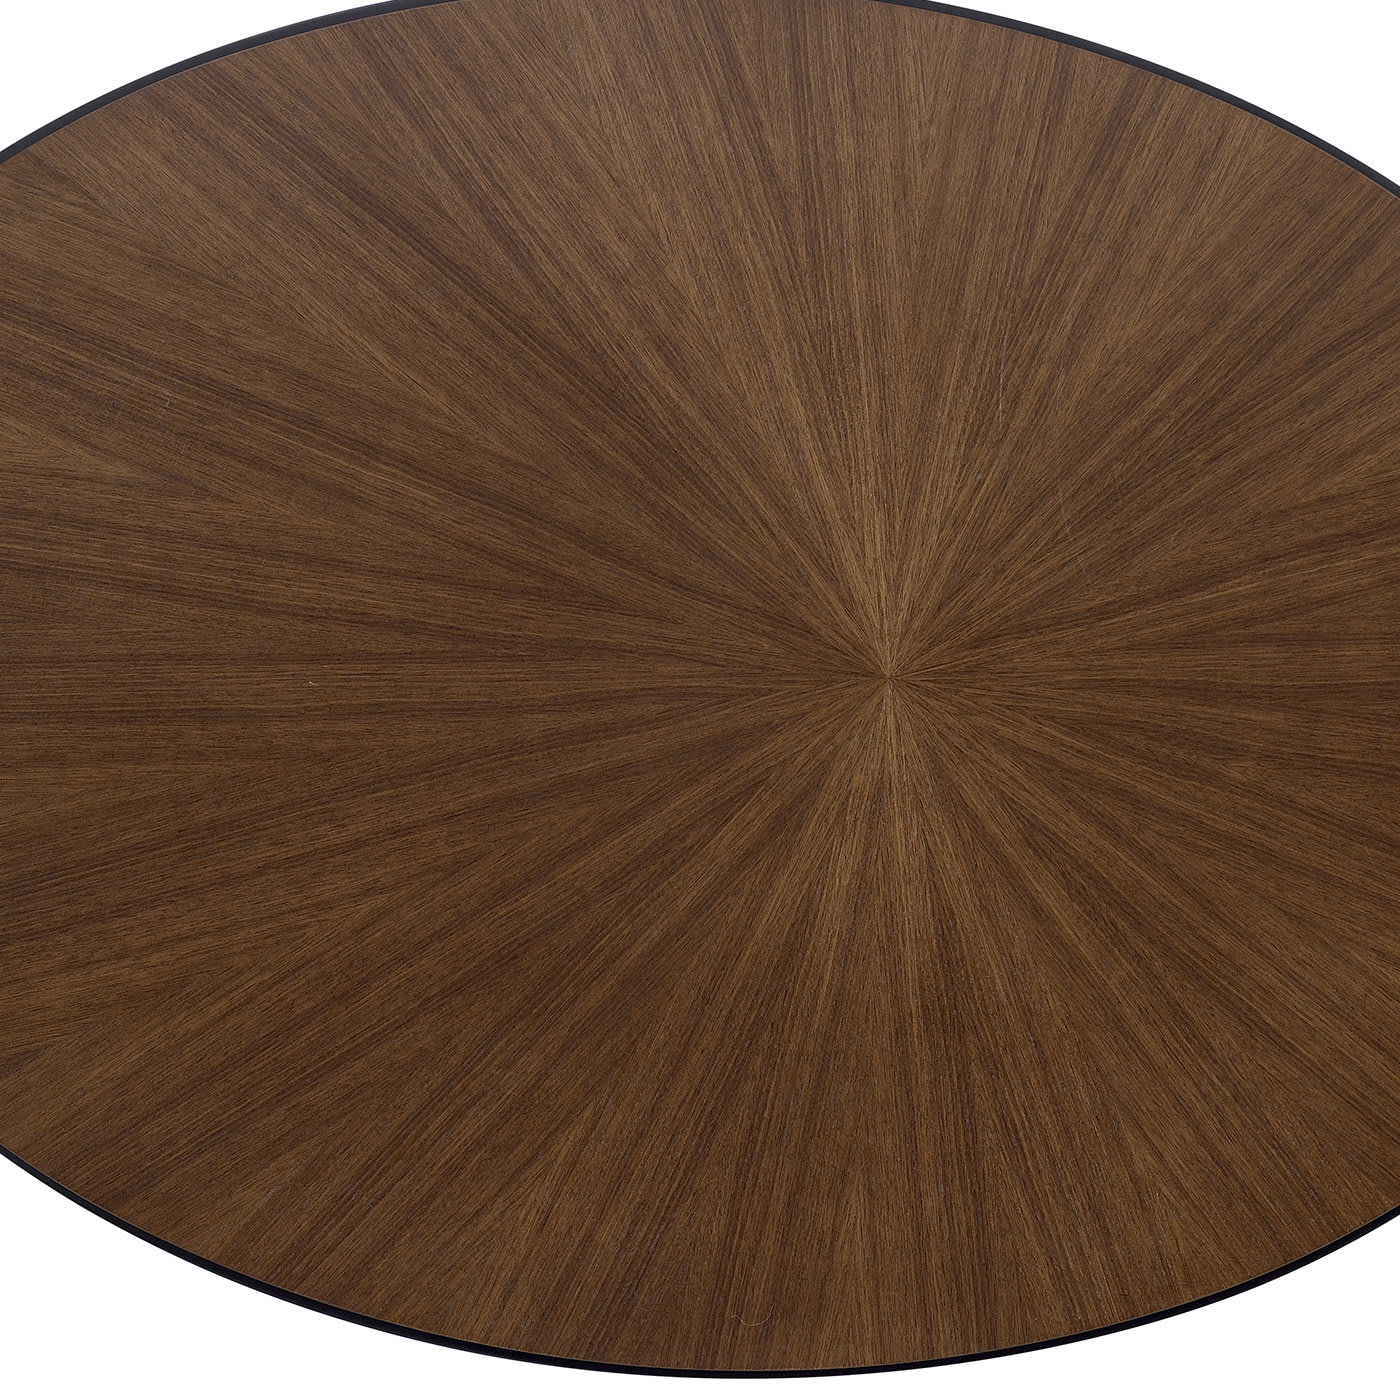 Tall Oval Coffee Table - A.R. Arredamenti